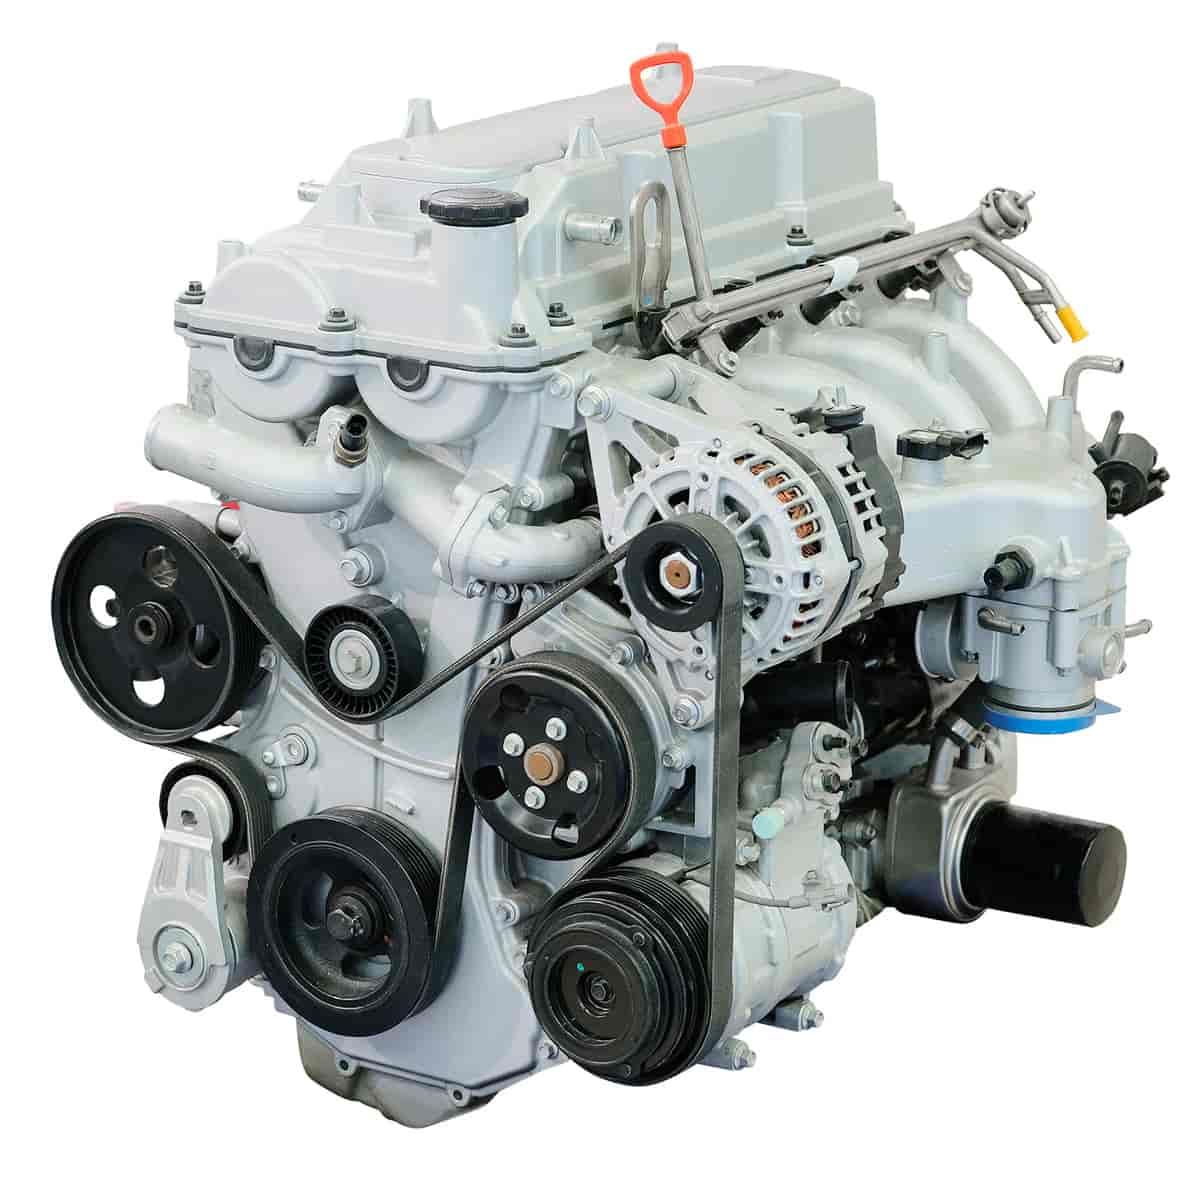 Standard forbrenningsmotor